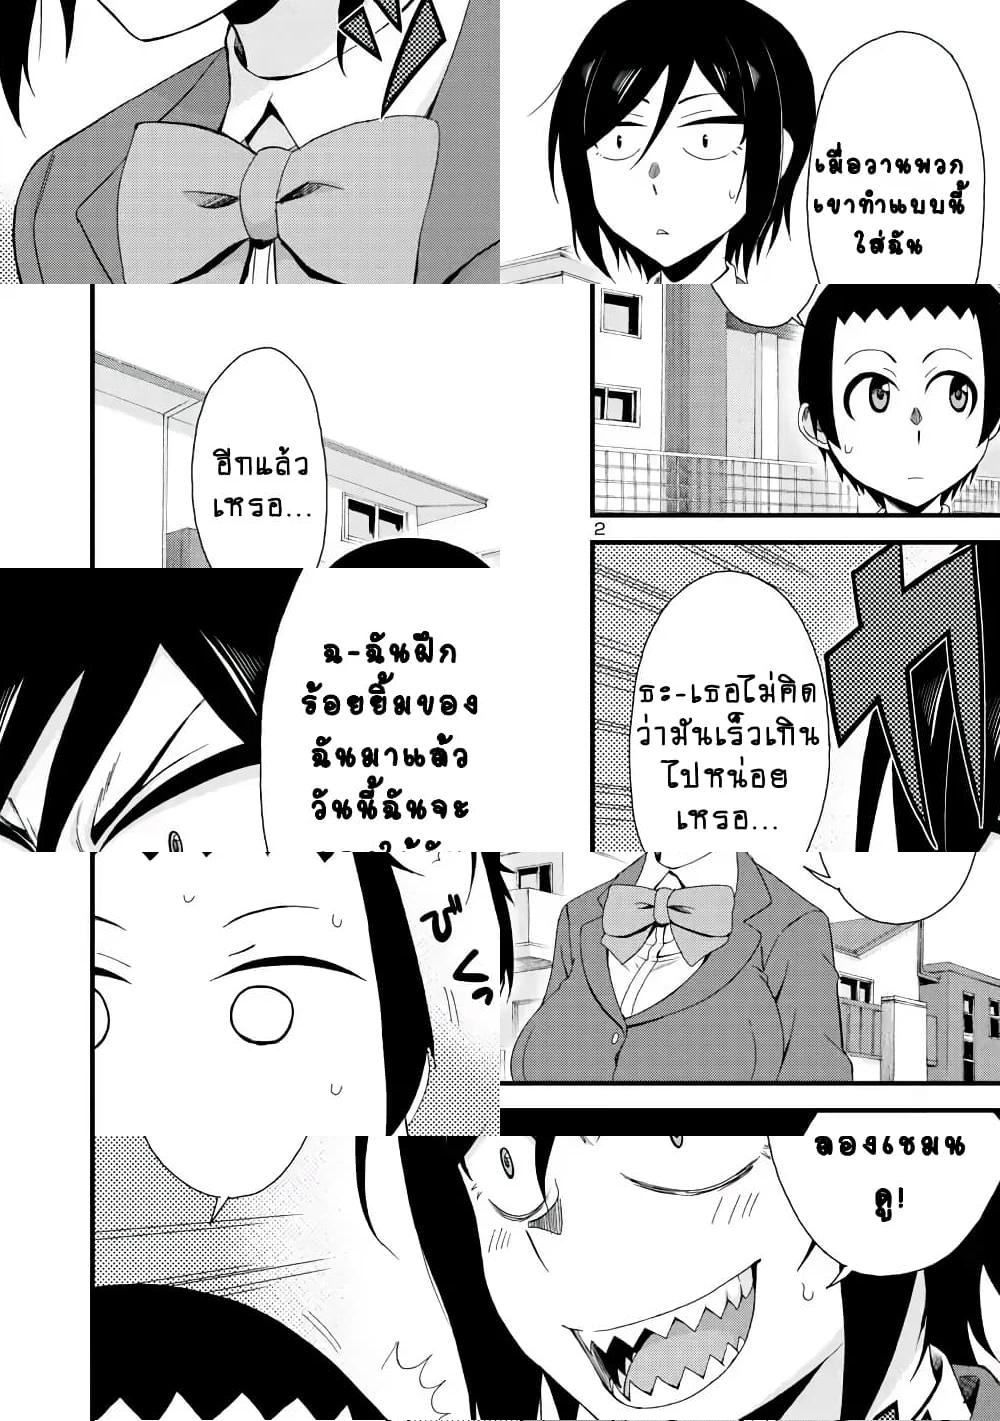 Hitomi-chan Is Shy With Strangers วันๆของน้องฮิโตมิก็เป็นแบบนี้แหล่ะ - 5 - 2